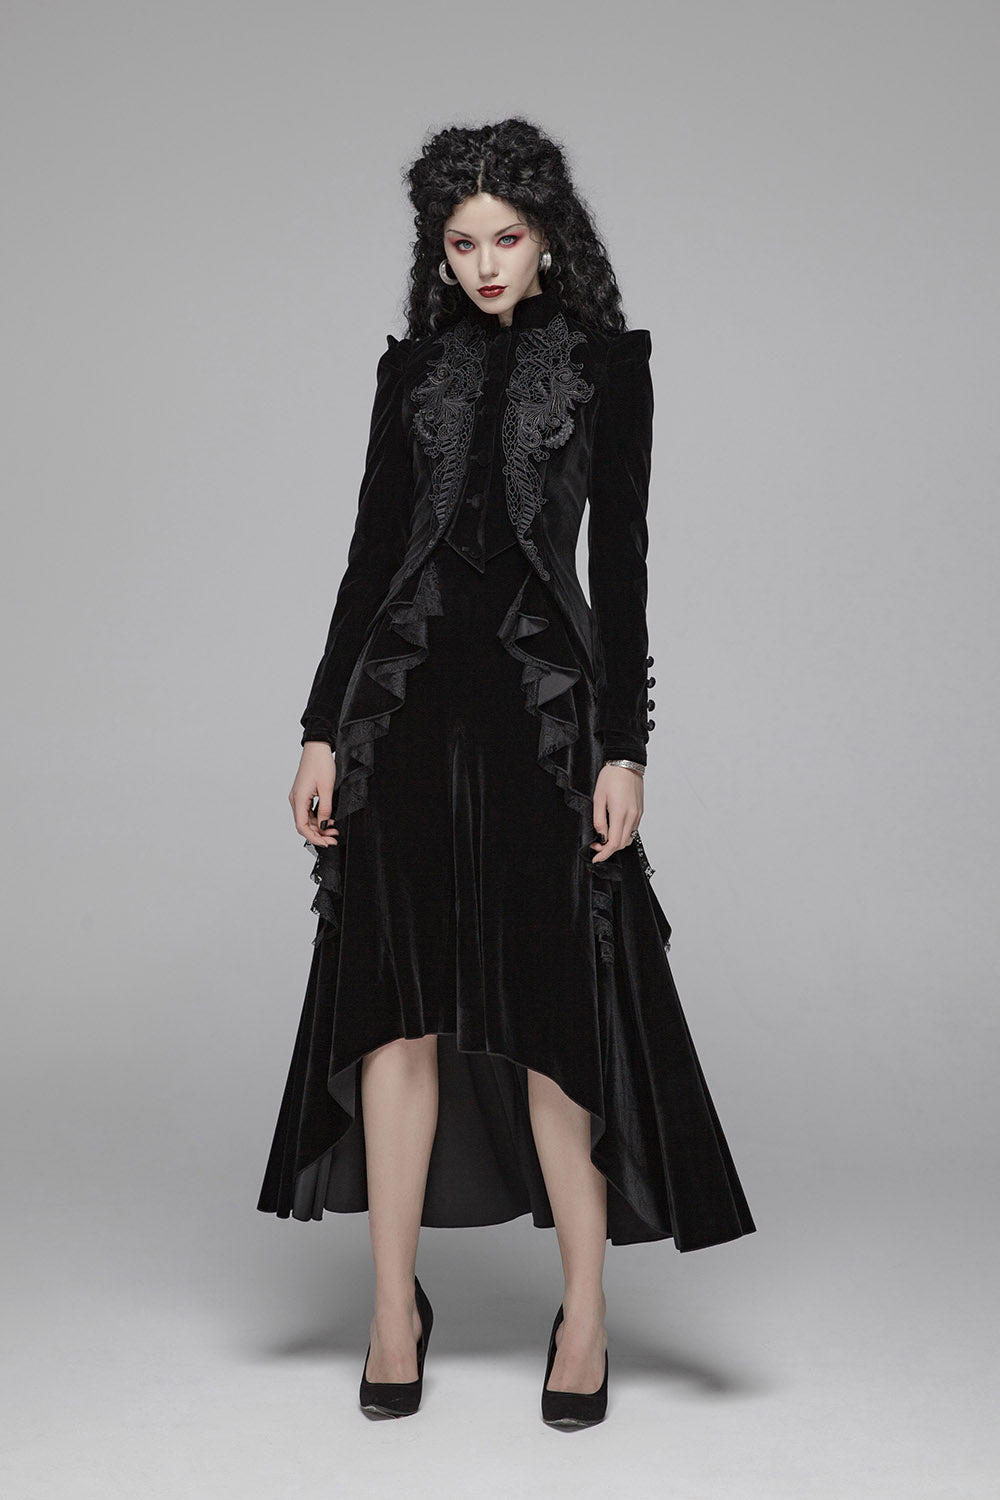 velvet gothic vampire jacket